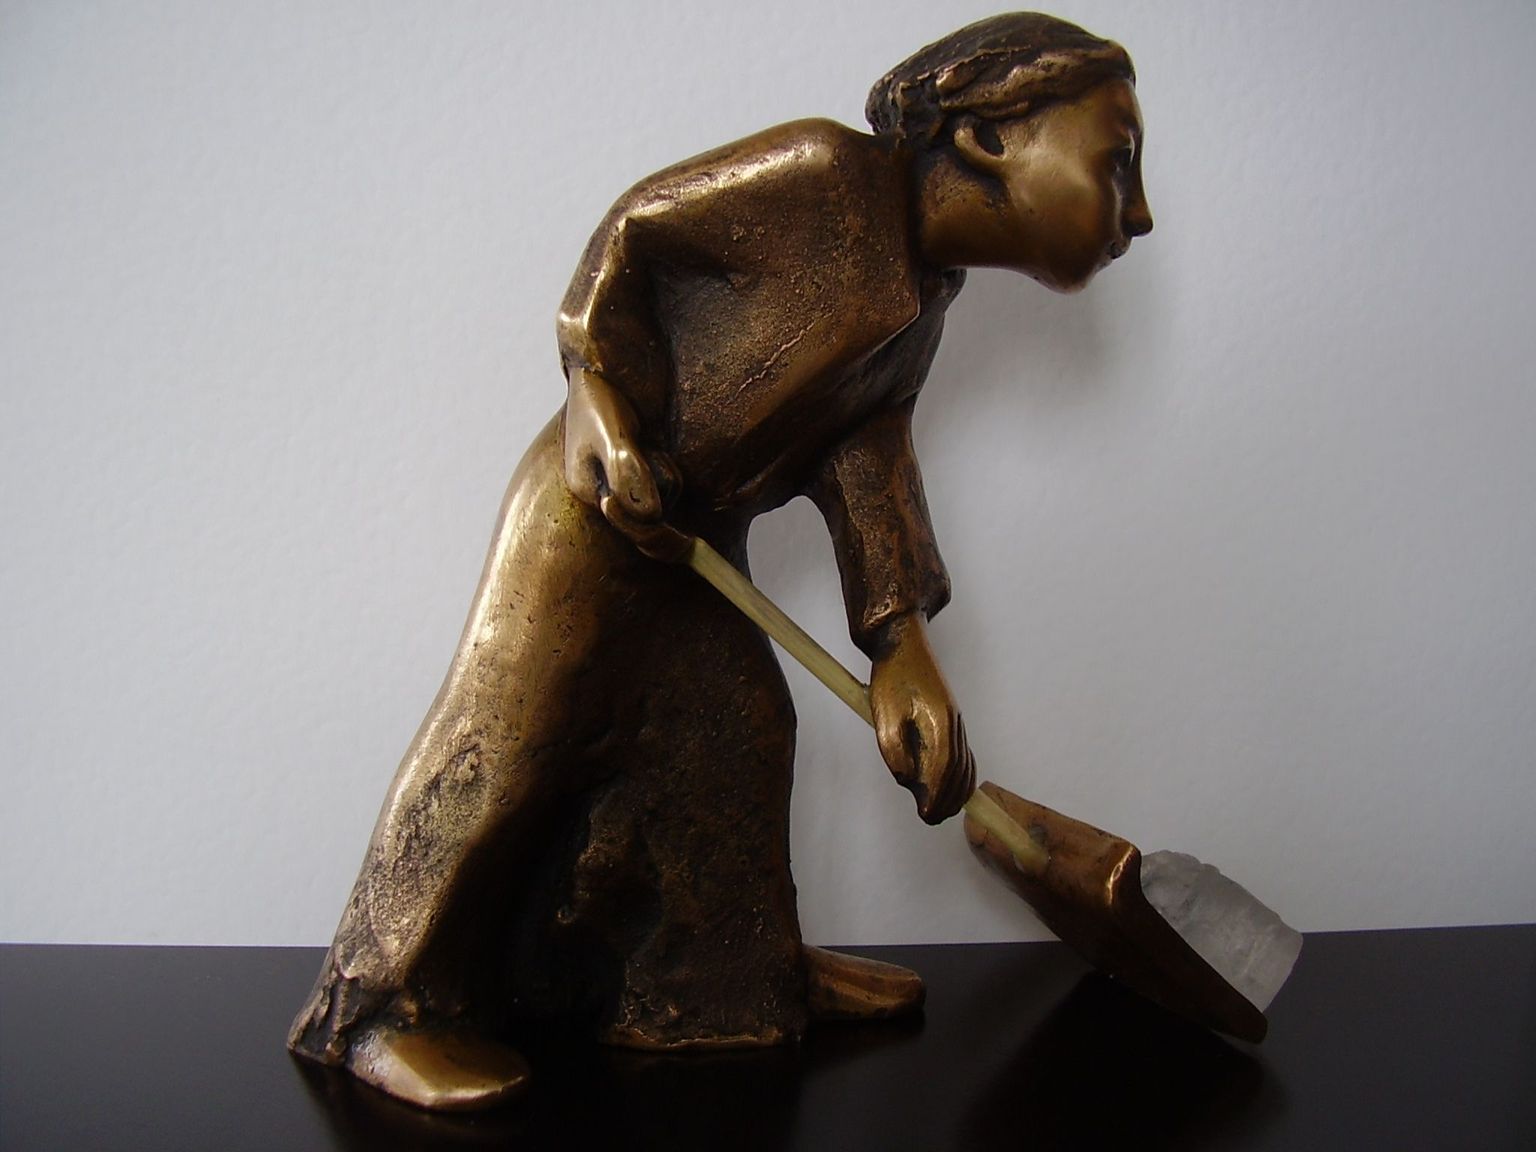 Lumemurdja konkursi võitja saab auhinnaks Reti Saksa skulptuuri.